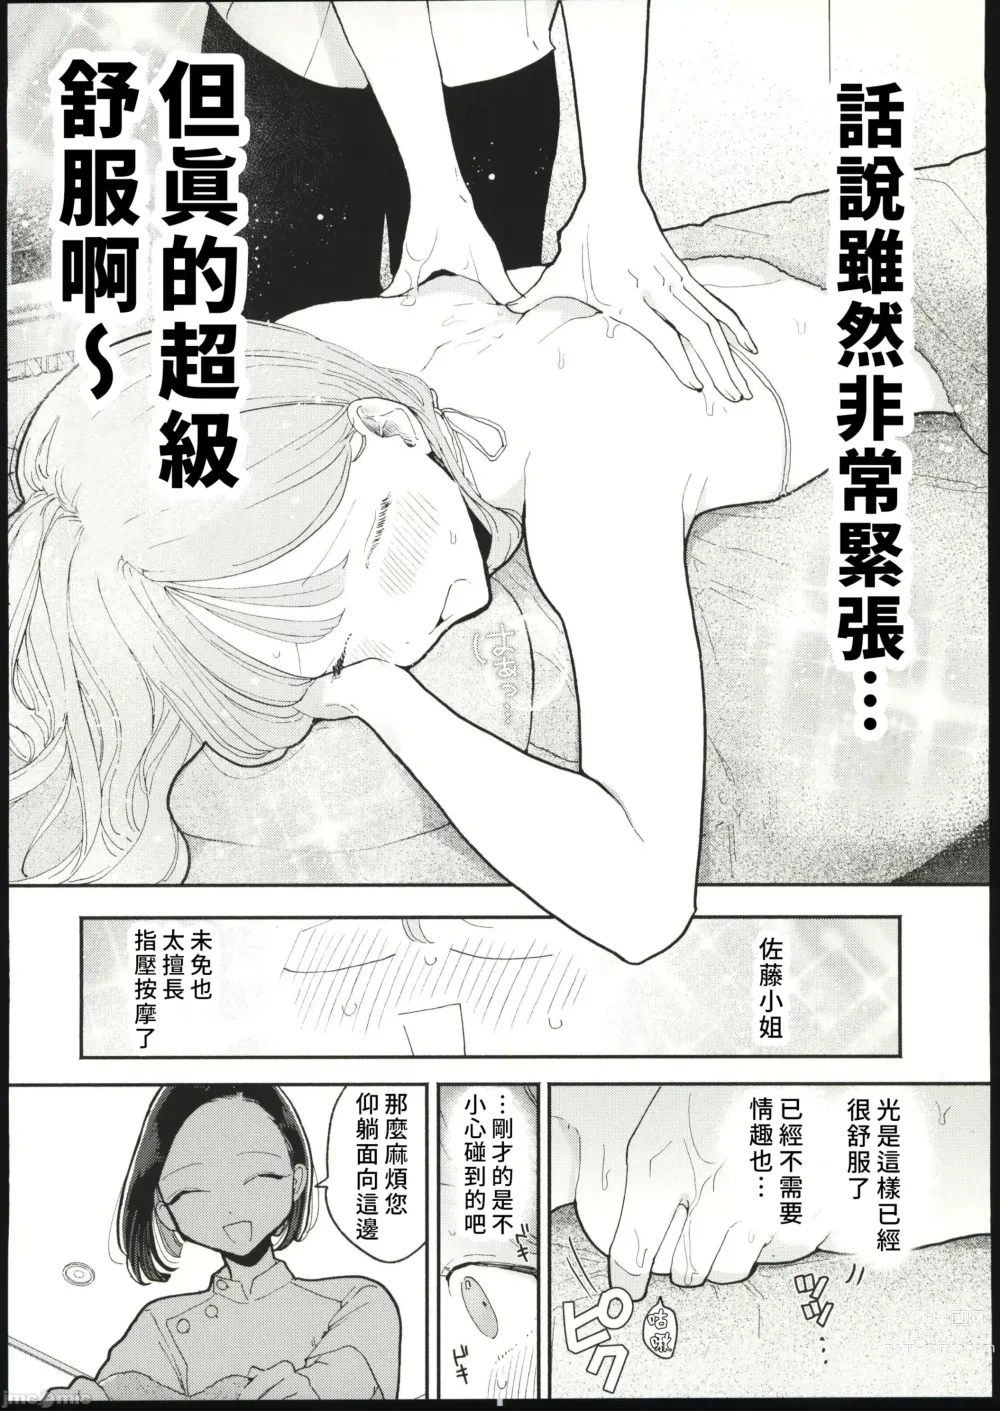 Page 9 of manga 絶頂リフレ 駅前の性感マッサージ店で○○になっちゃう女の子の話